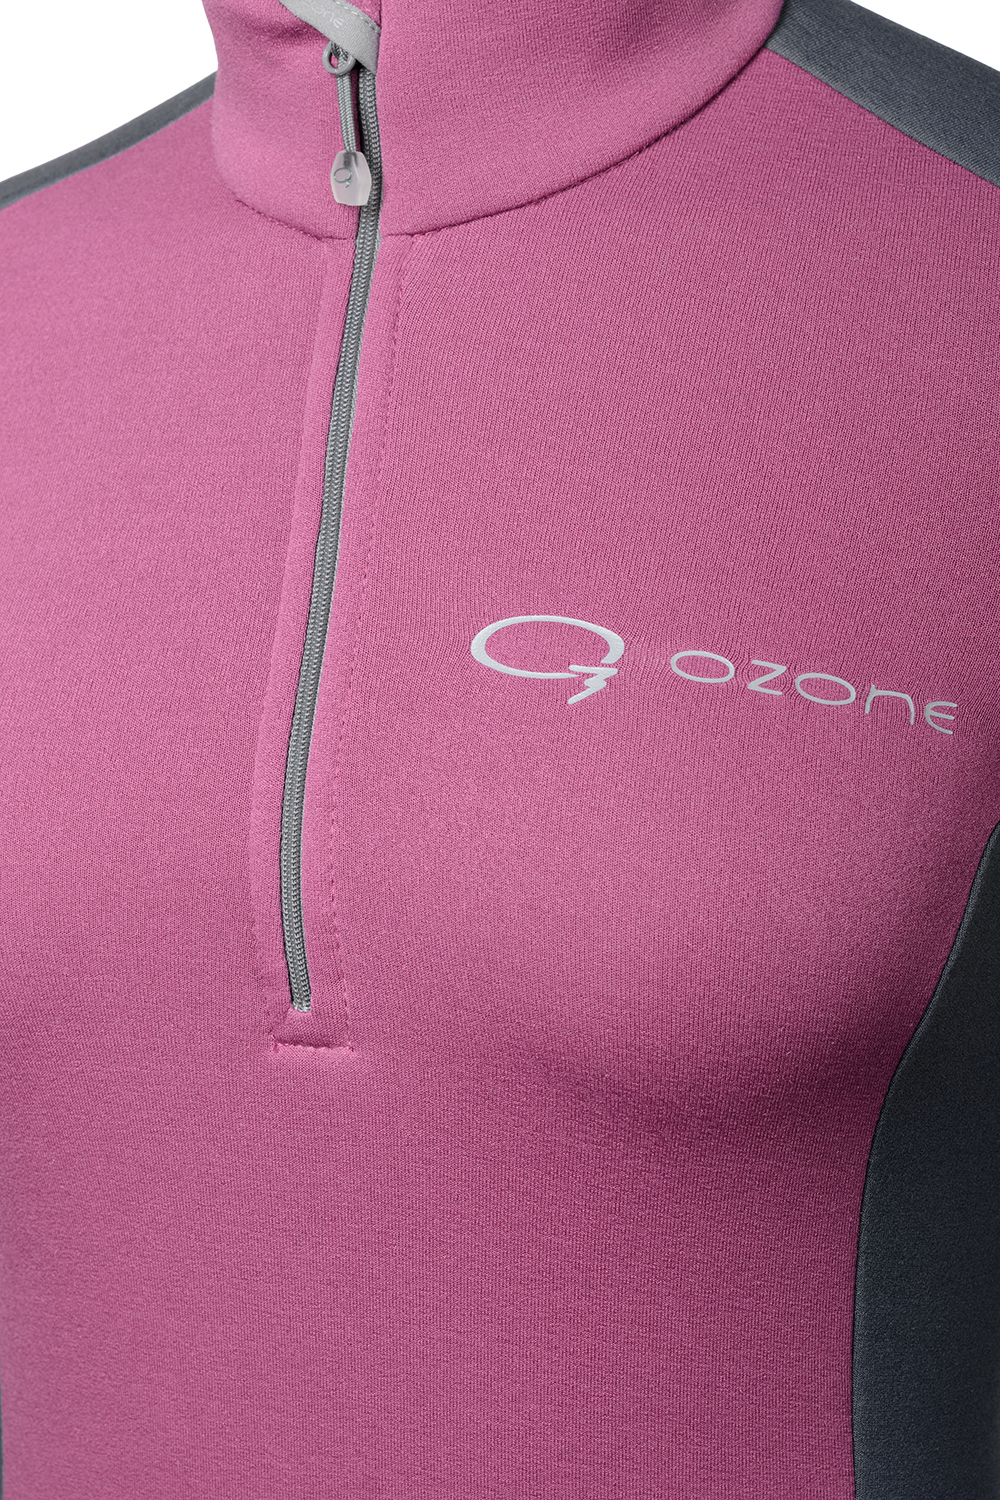 Женский пуловер термобелье Malta купить в O3 Ozone